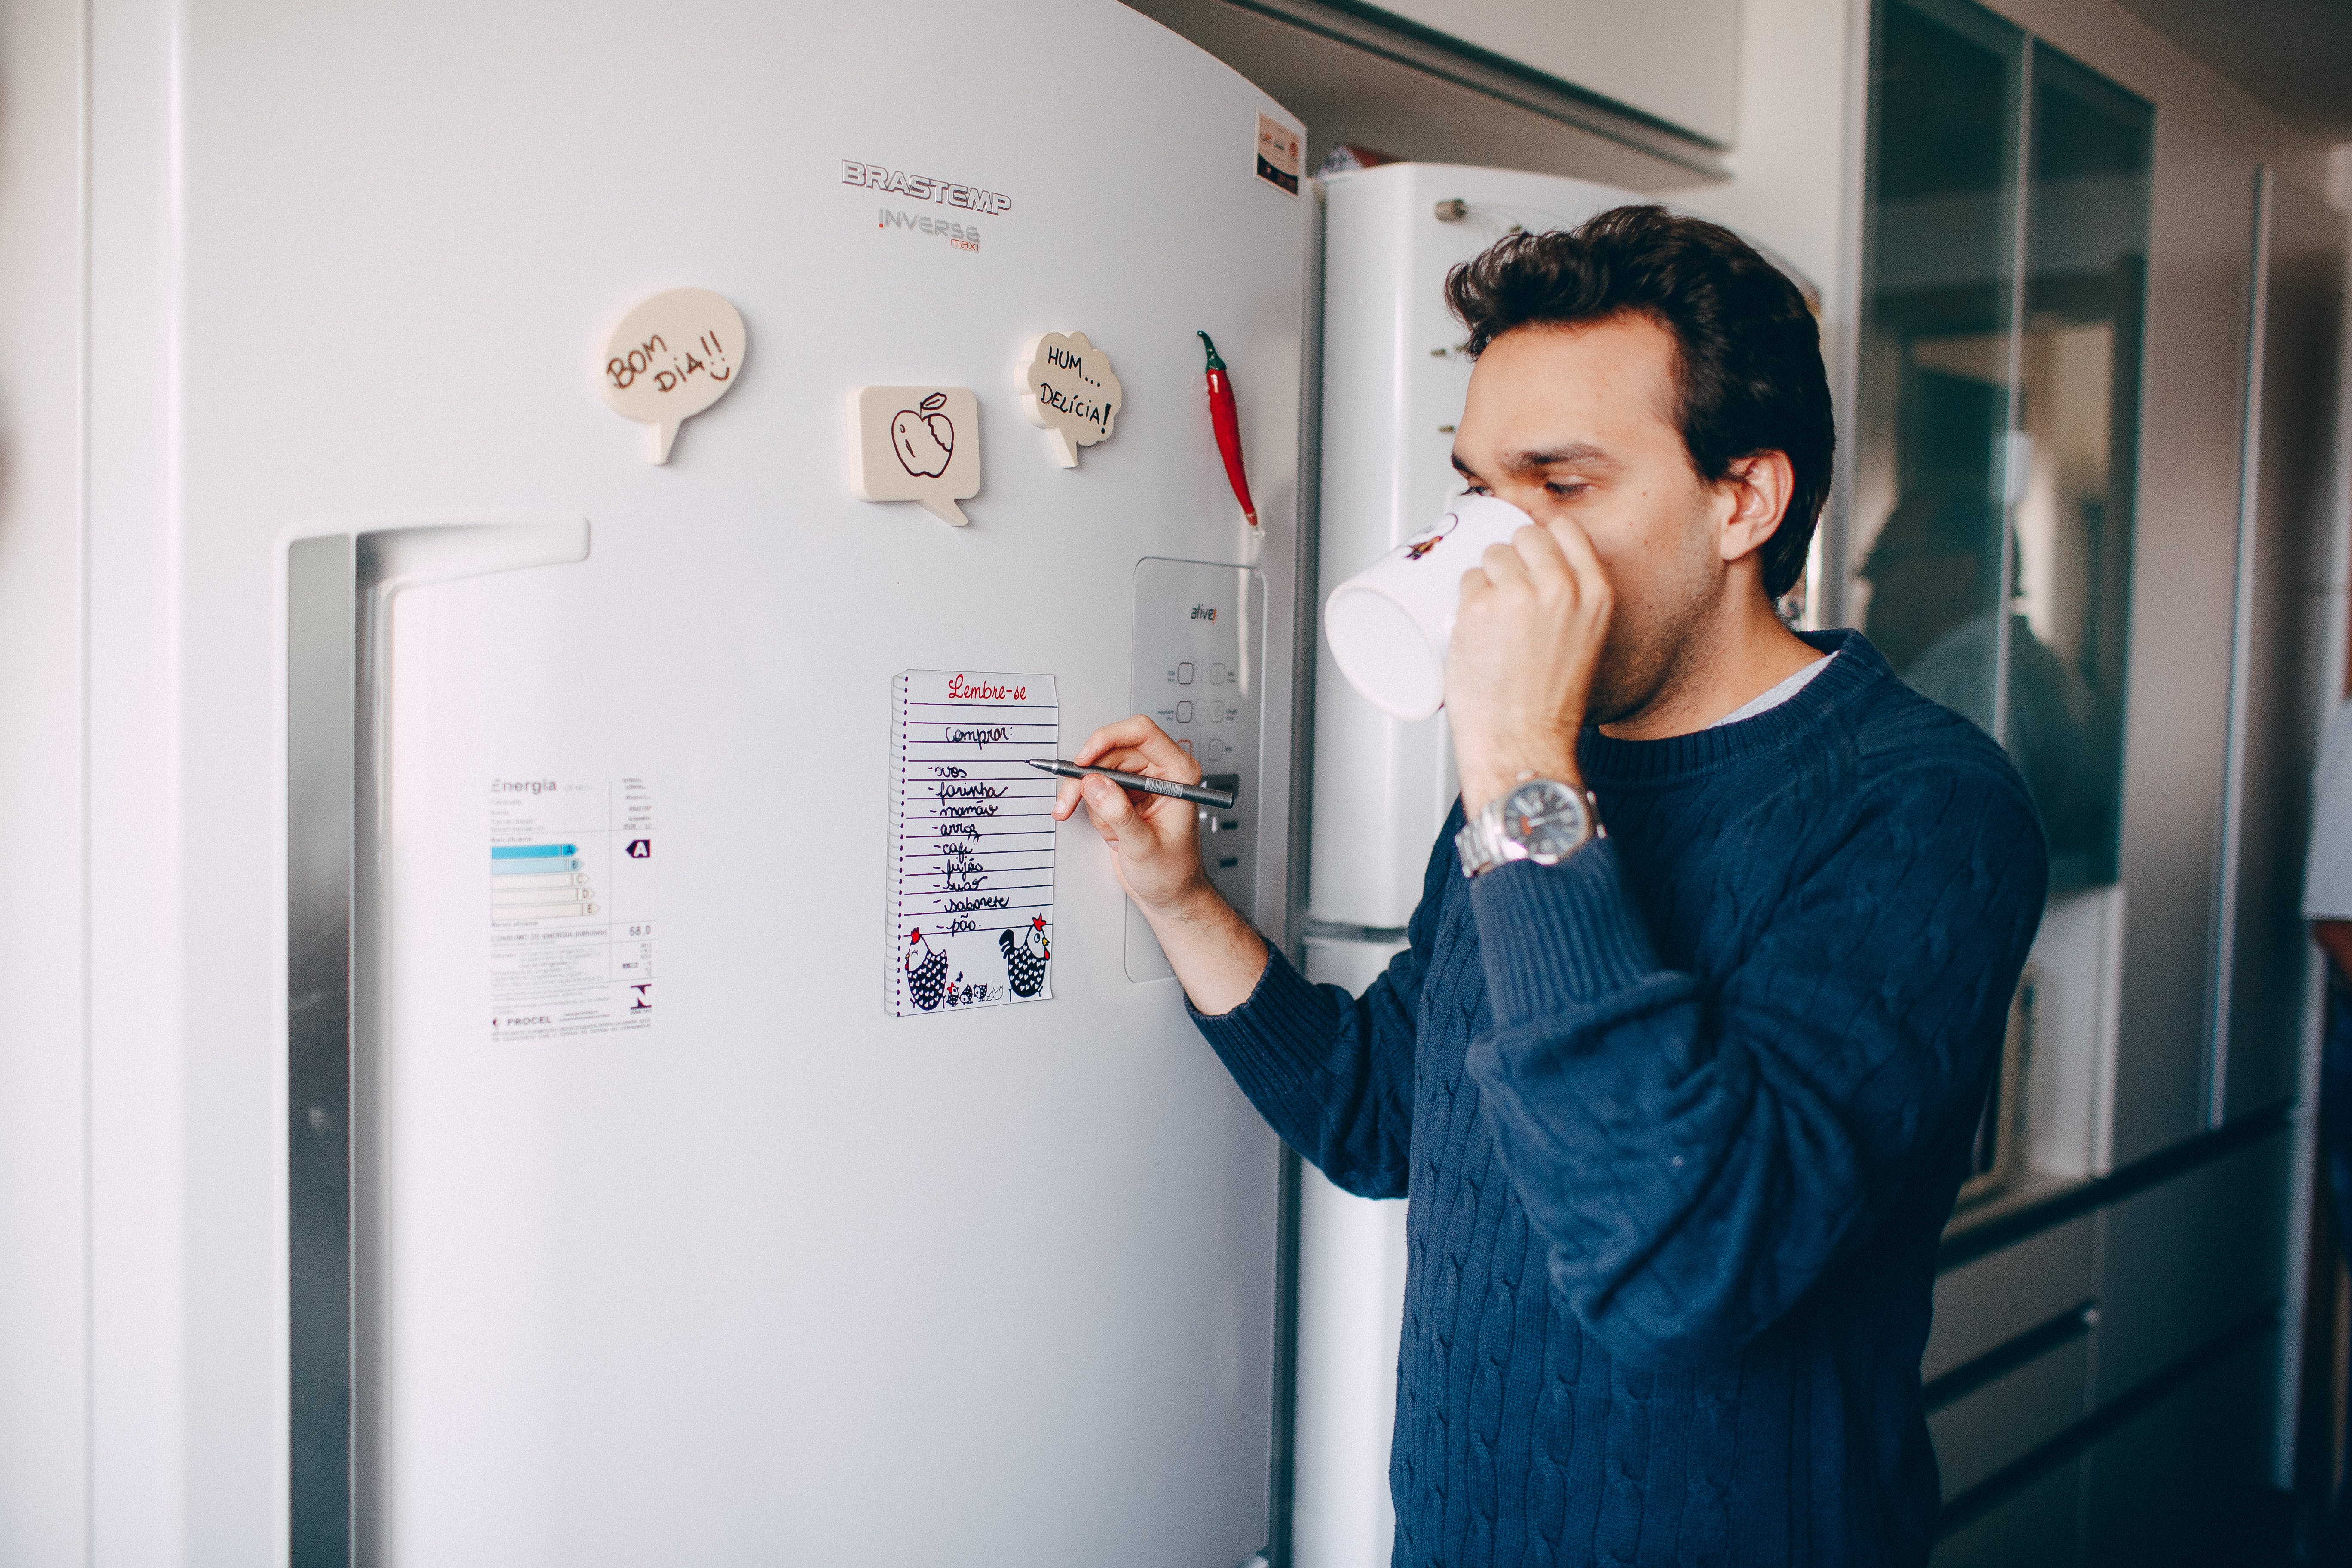 Un homme boit dans sa tasse tout en écrivant quelque chose sur un papier collé sur un réfrigérateur | Source : Pexels